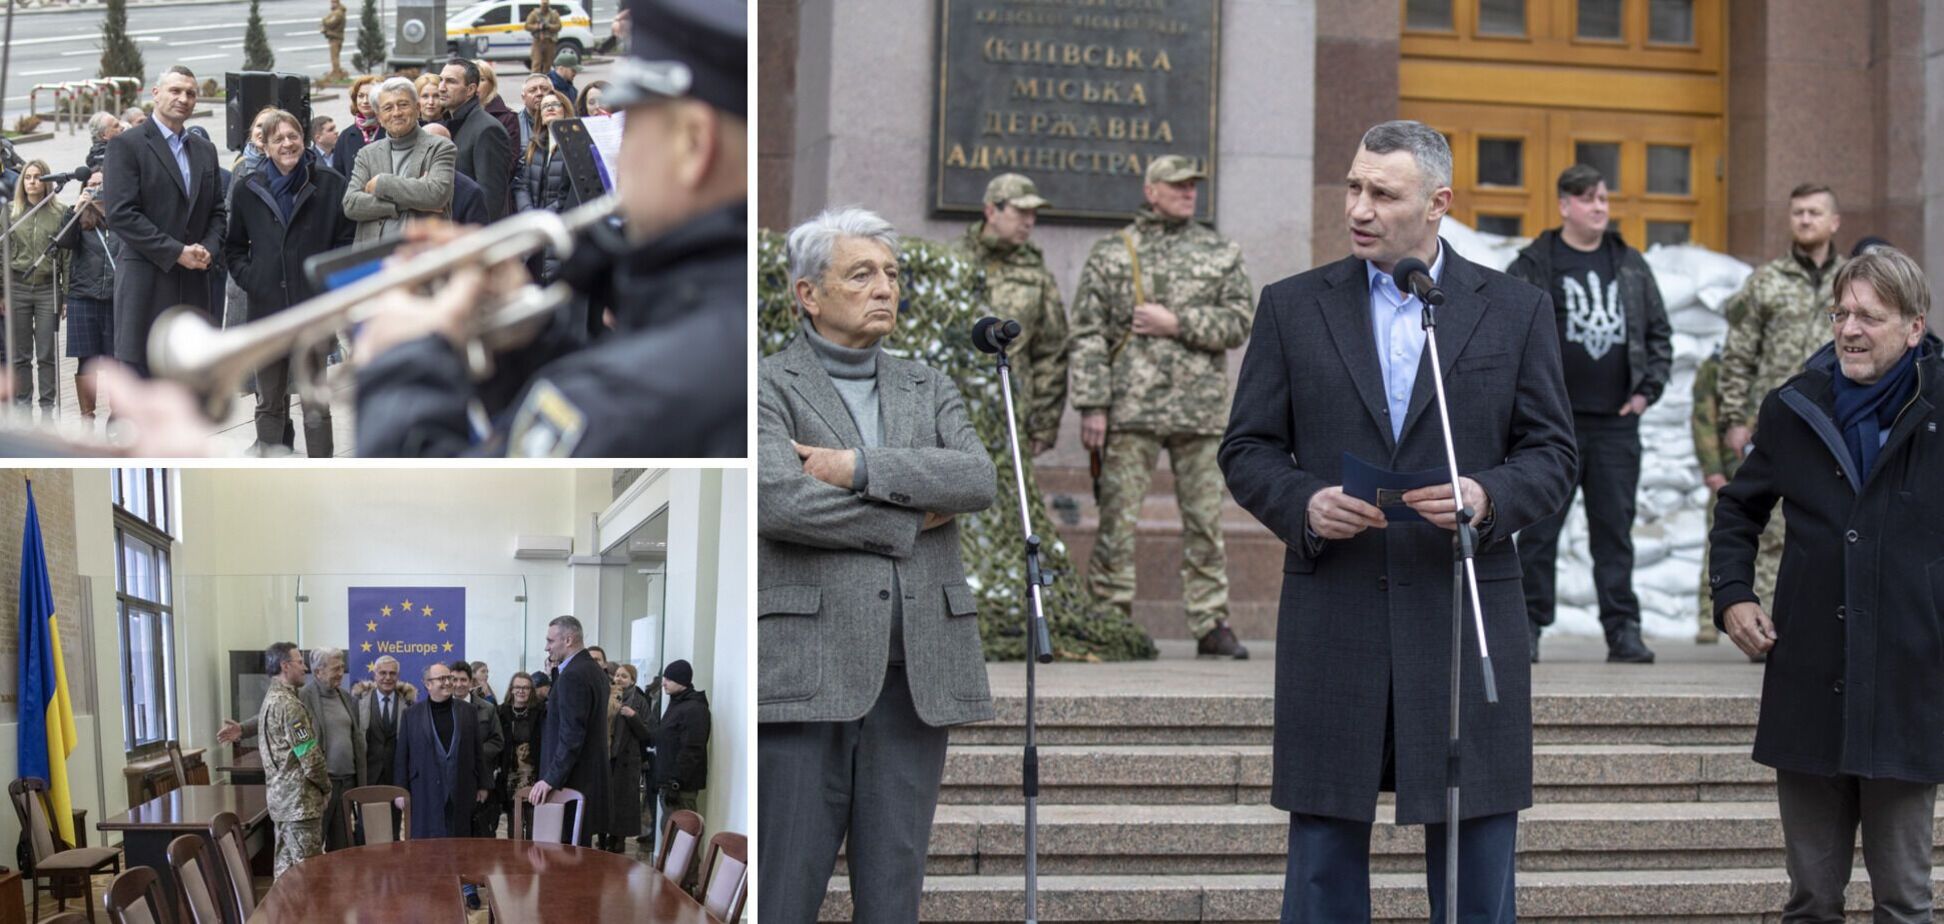 При поддержке евродепутатов и Франции в мэрии Киева открыли Европейский Дом